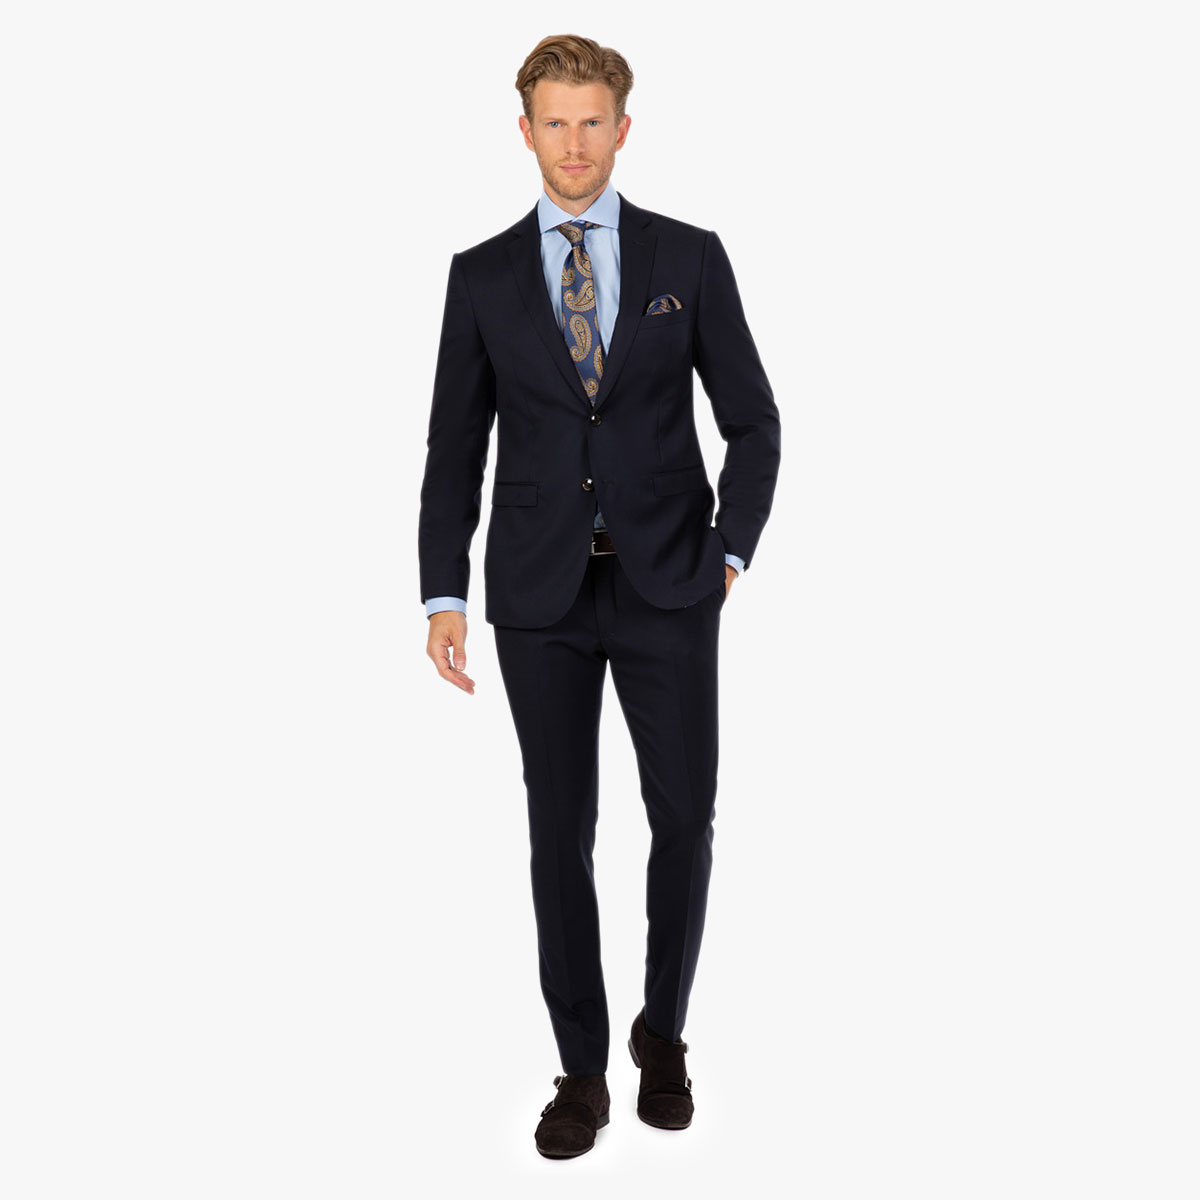 Moderner schlank geschnittener Anzug in dunkelblau